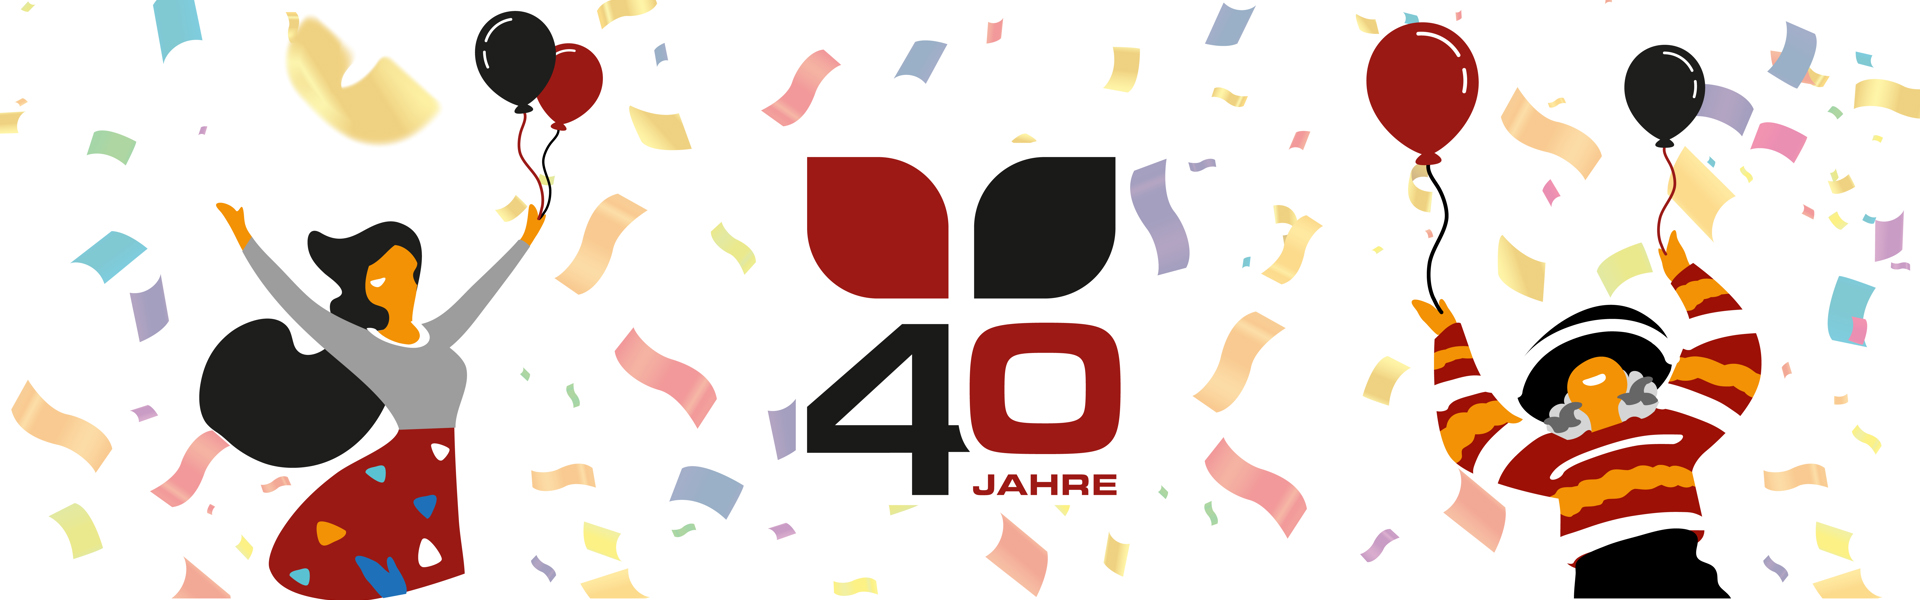 40 Jahre - Jubiläum